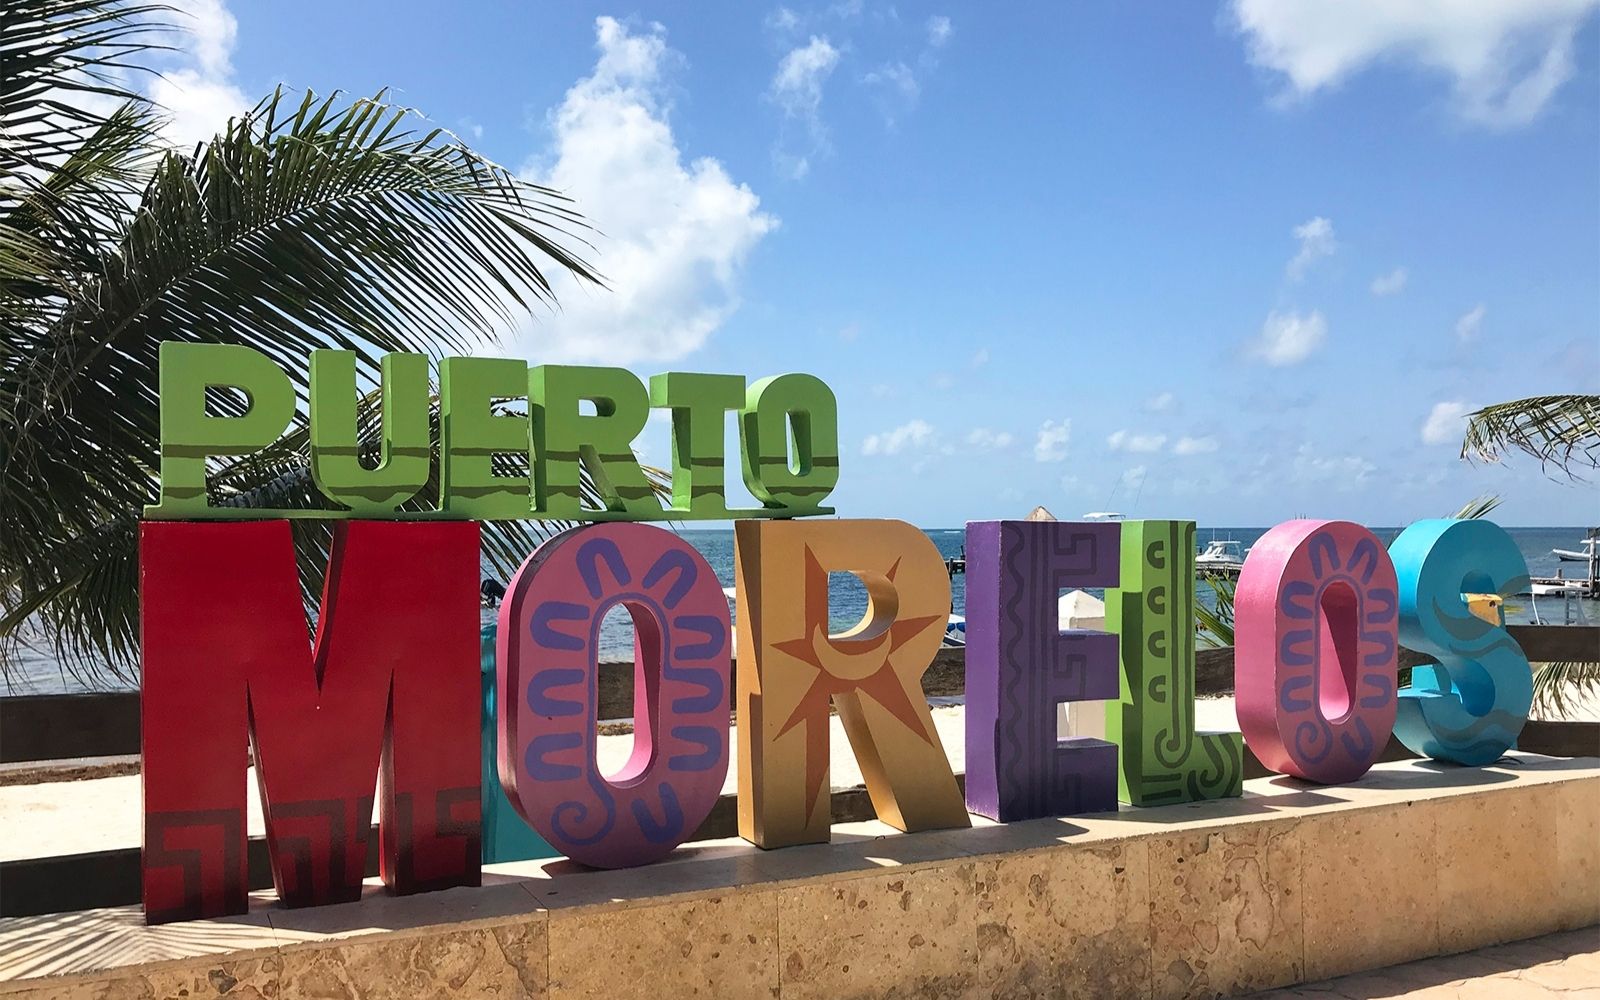 Departamento con vista al mar, acceso a la playa, pet-friendly, en venta Puerto Morelos.